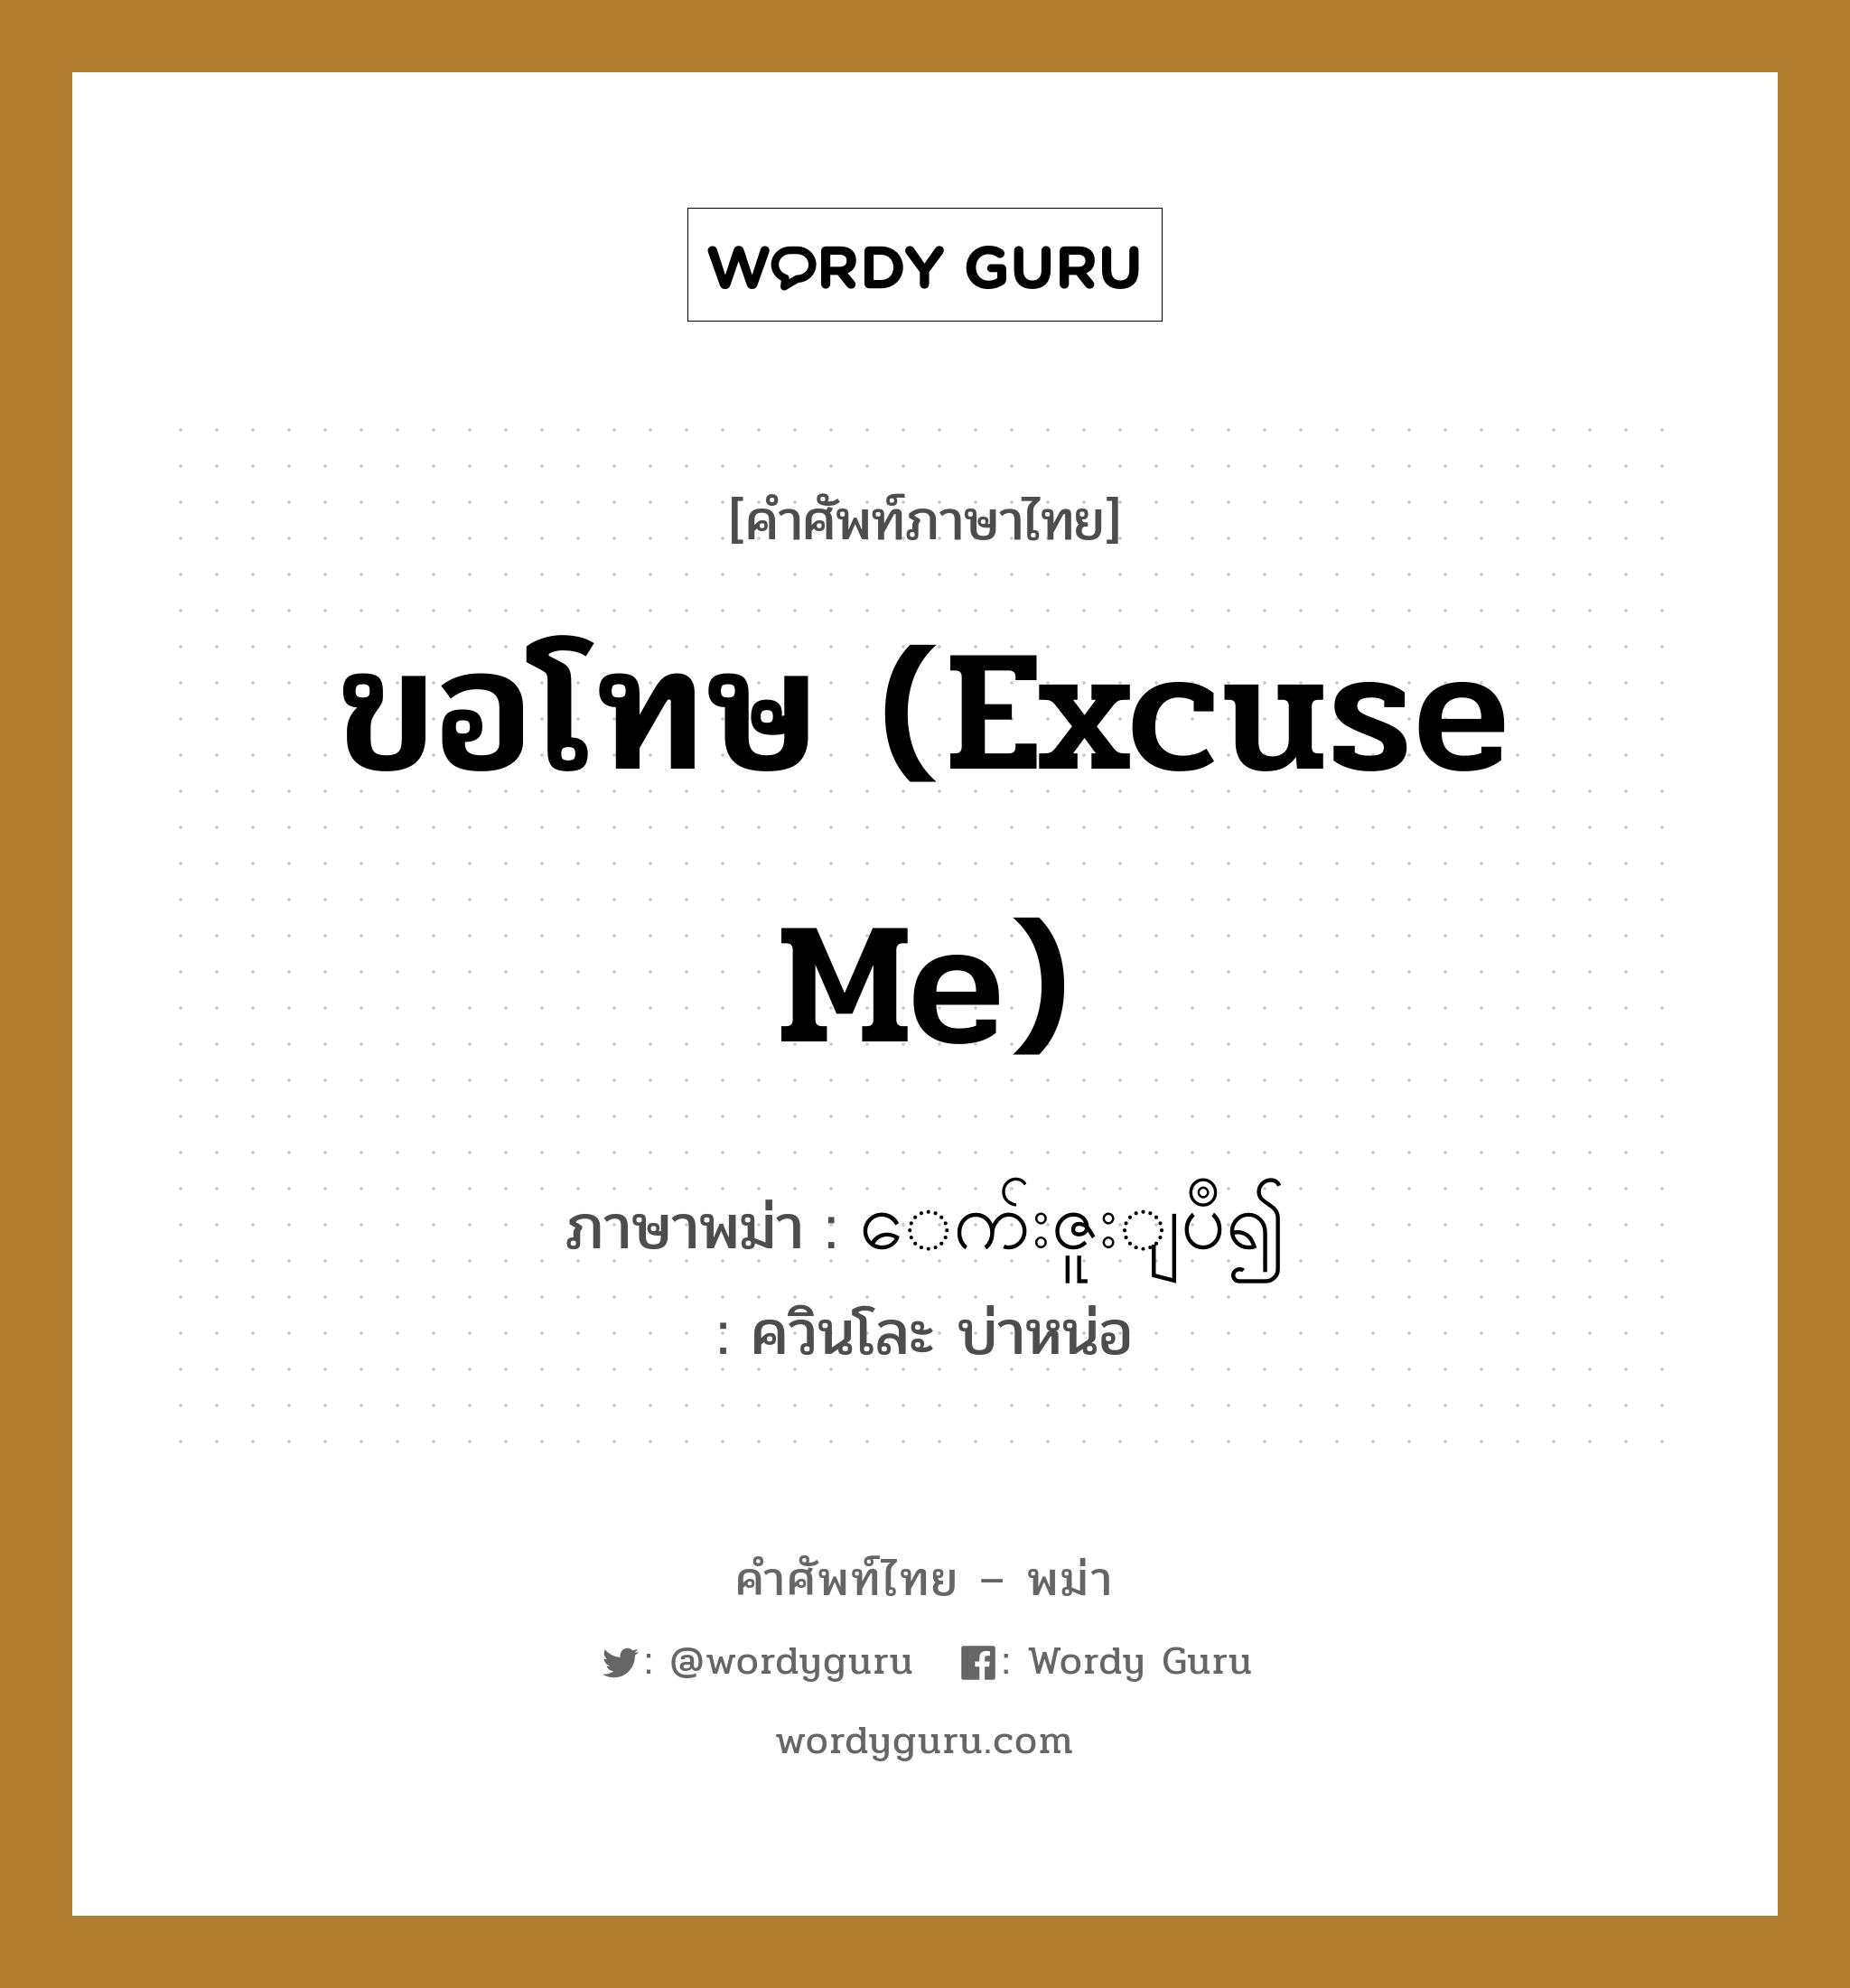 ေက်းဇူးျပဳ၍ ภาษาไทย?, คำศัพท์ภาษาไทย - พม่า ေက်းဇူးျပဳ၍ ภาษาพม่า ขอโทษ (Excuse me) หมวด ทั่วไป ควินโละ บ่าหน่อ หมวด ทั่วไป